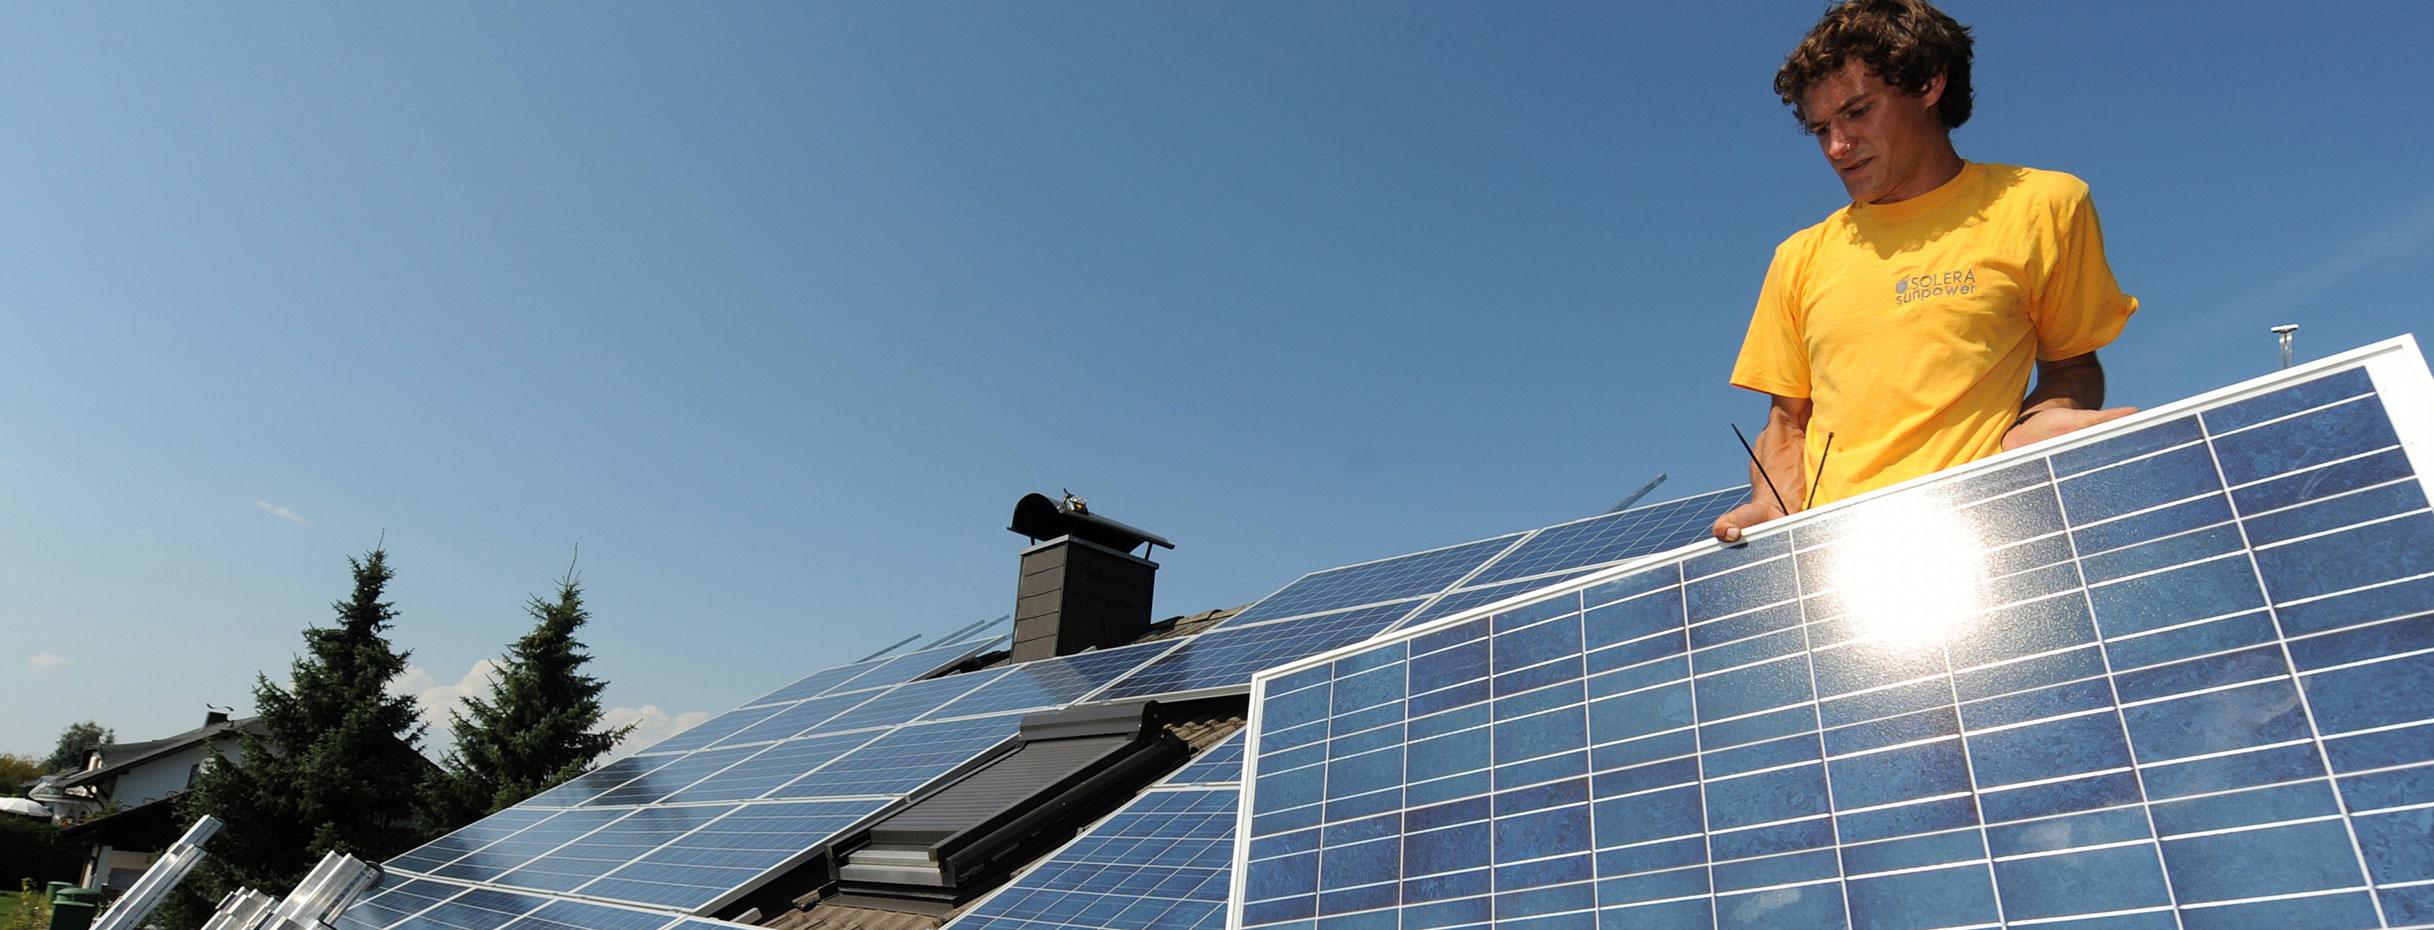 Zwei Monteure einer Firma für Solartechnik installieren auf einem Dach Solarpanele. (Bild: © dpa)